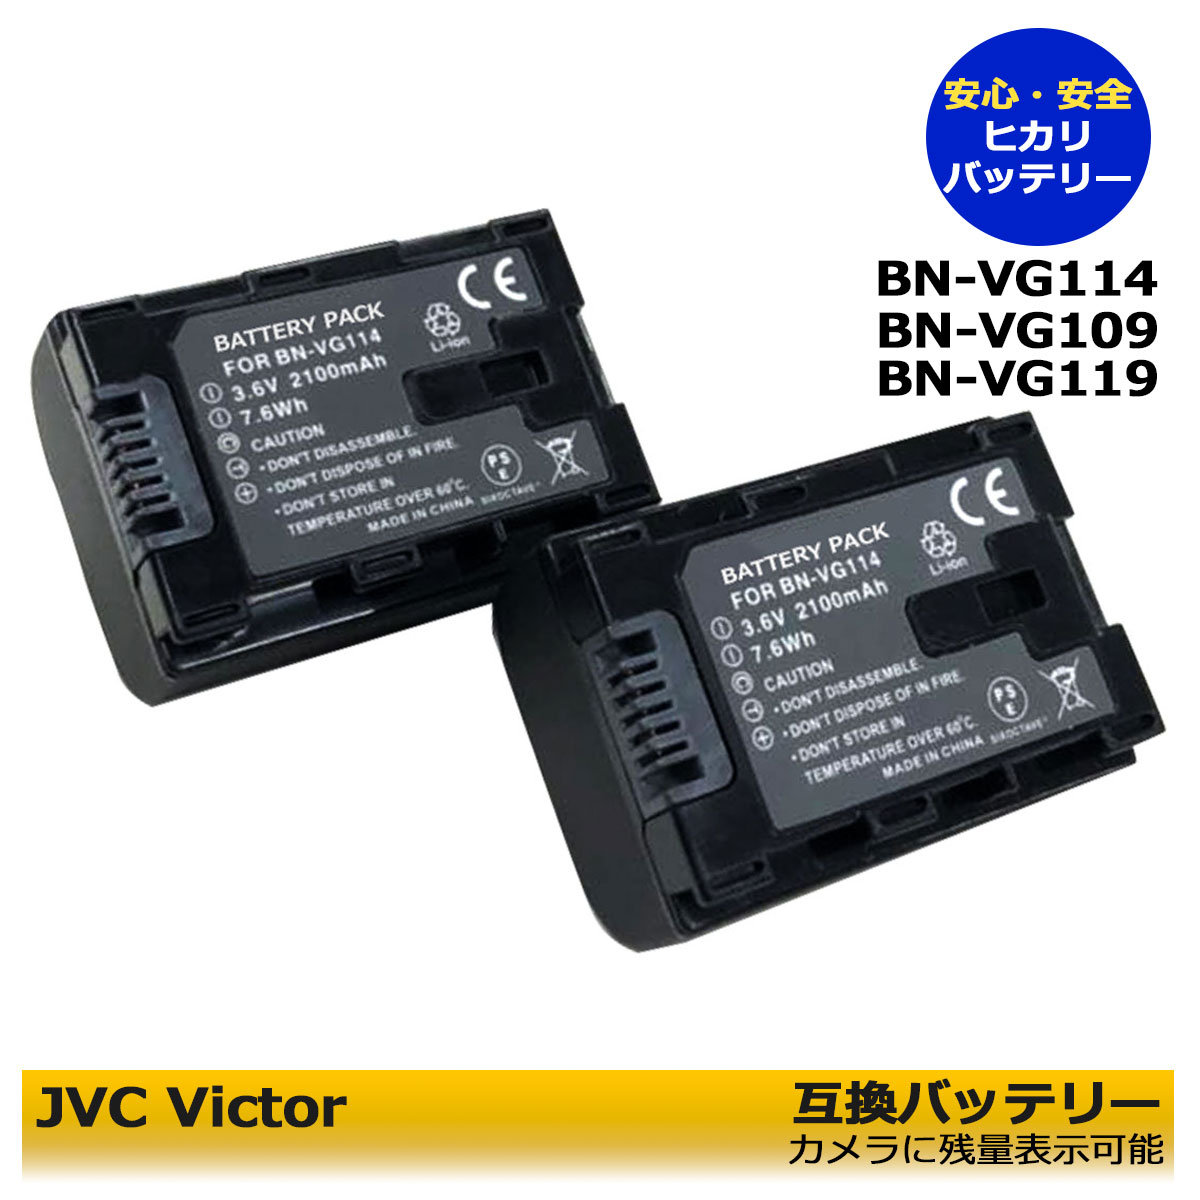 JVC Victor・JVC HM177-R